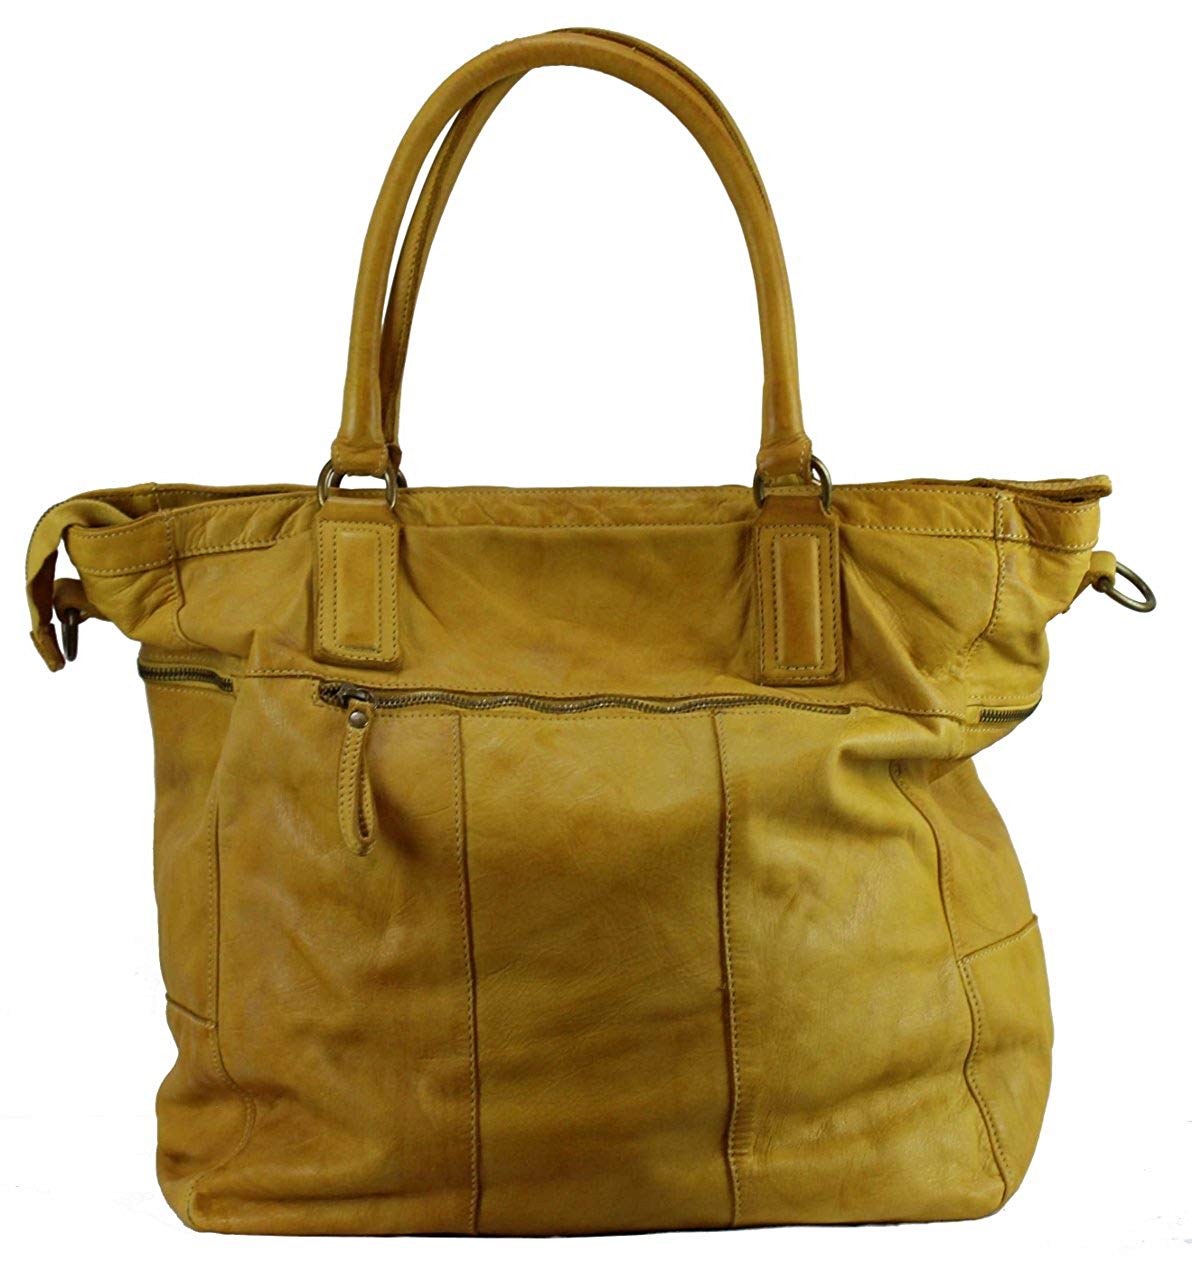 BZNA Bag Boney gelb Italy Designer Damen Handtasche Schultertasche Tasche Leder Shopper Neu